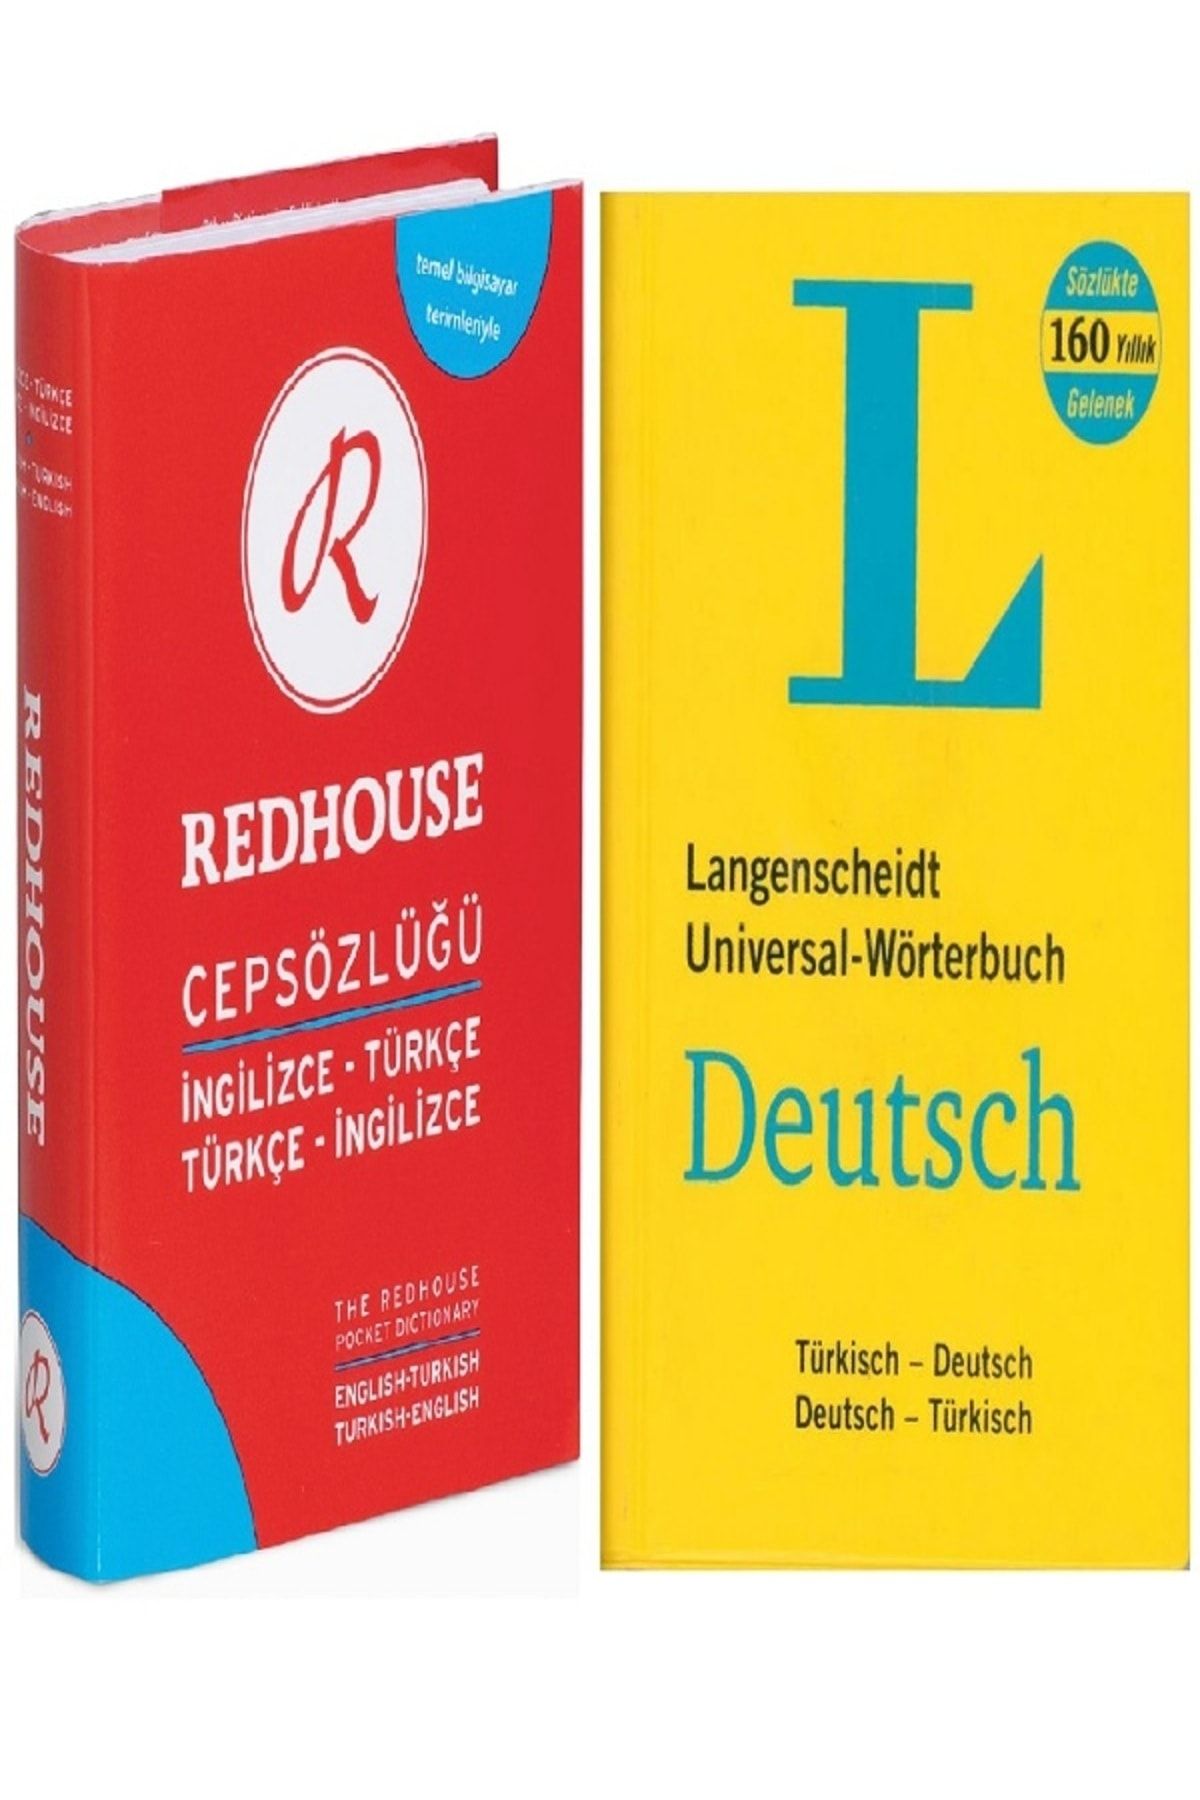 Açı Yayınları L Sözlük Deutsch Almança -türkçe Langenscheidt Wörterbuch - R Cep Sözlük Türkçe Ingilizce